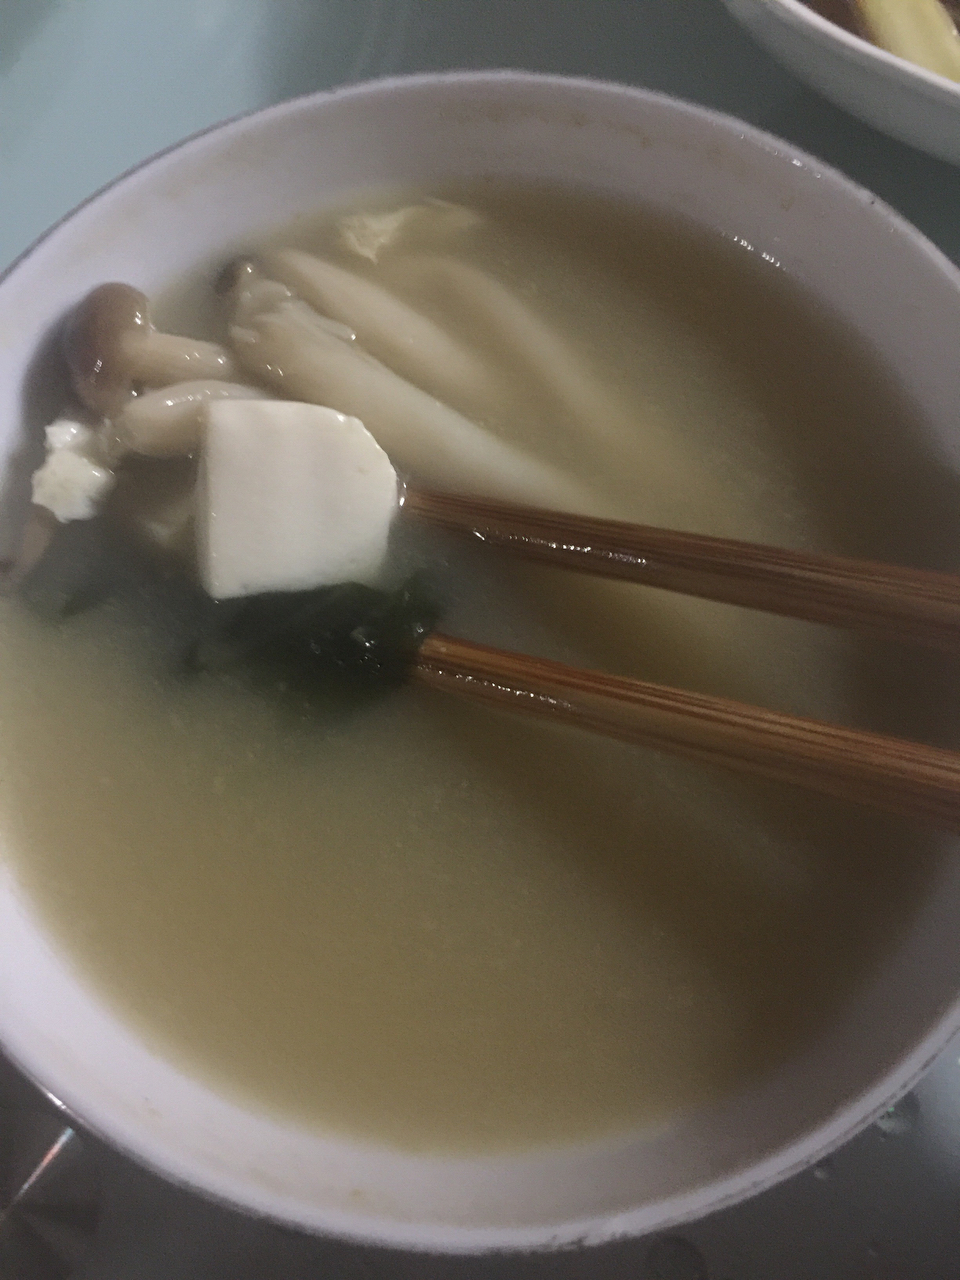 日式味增汤